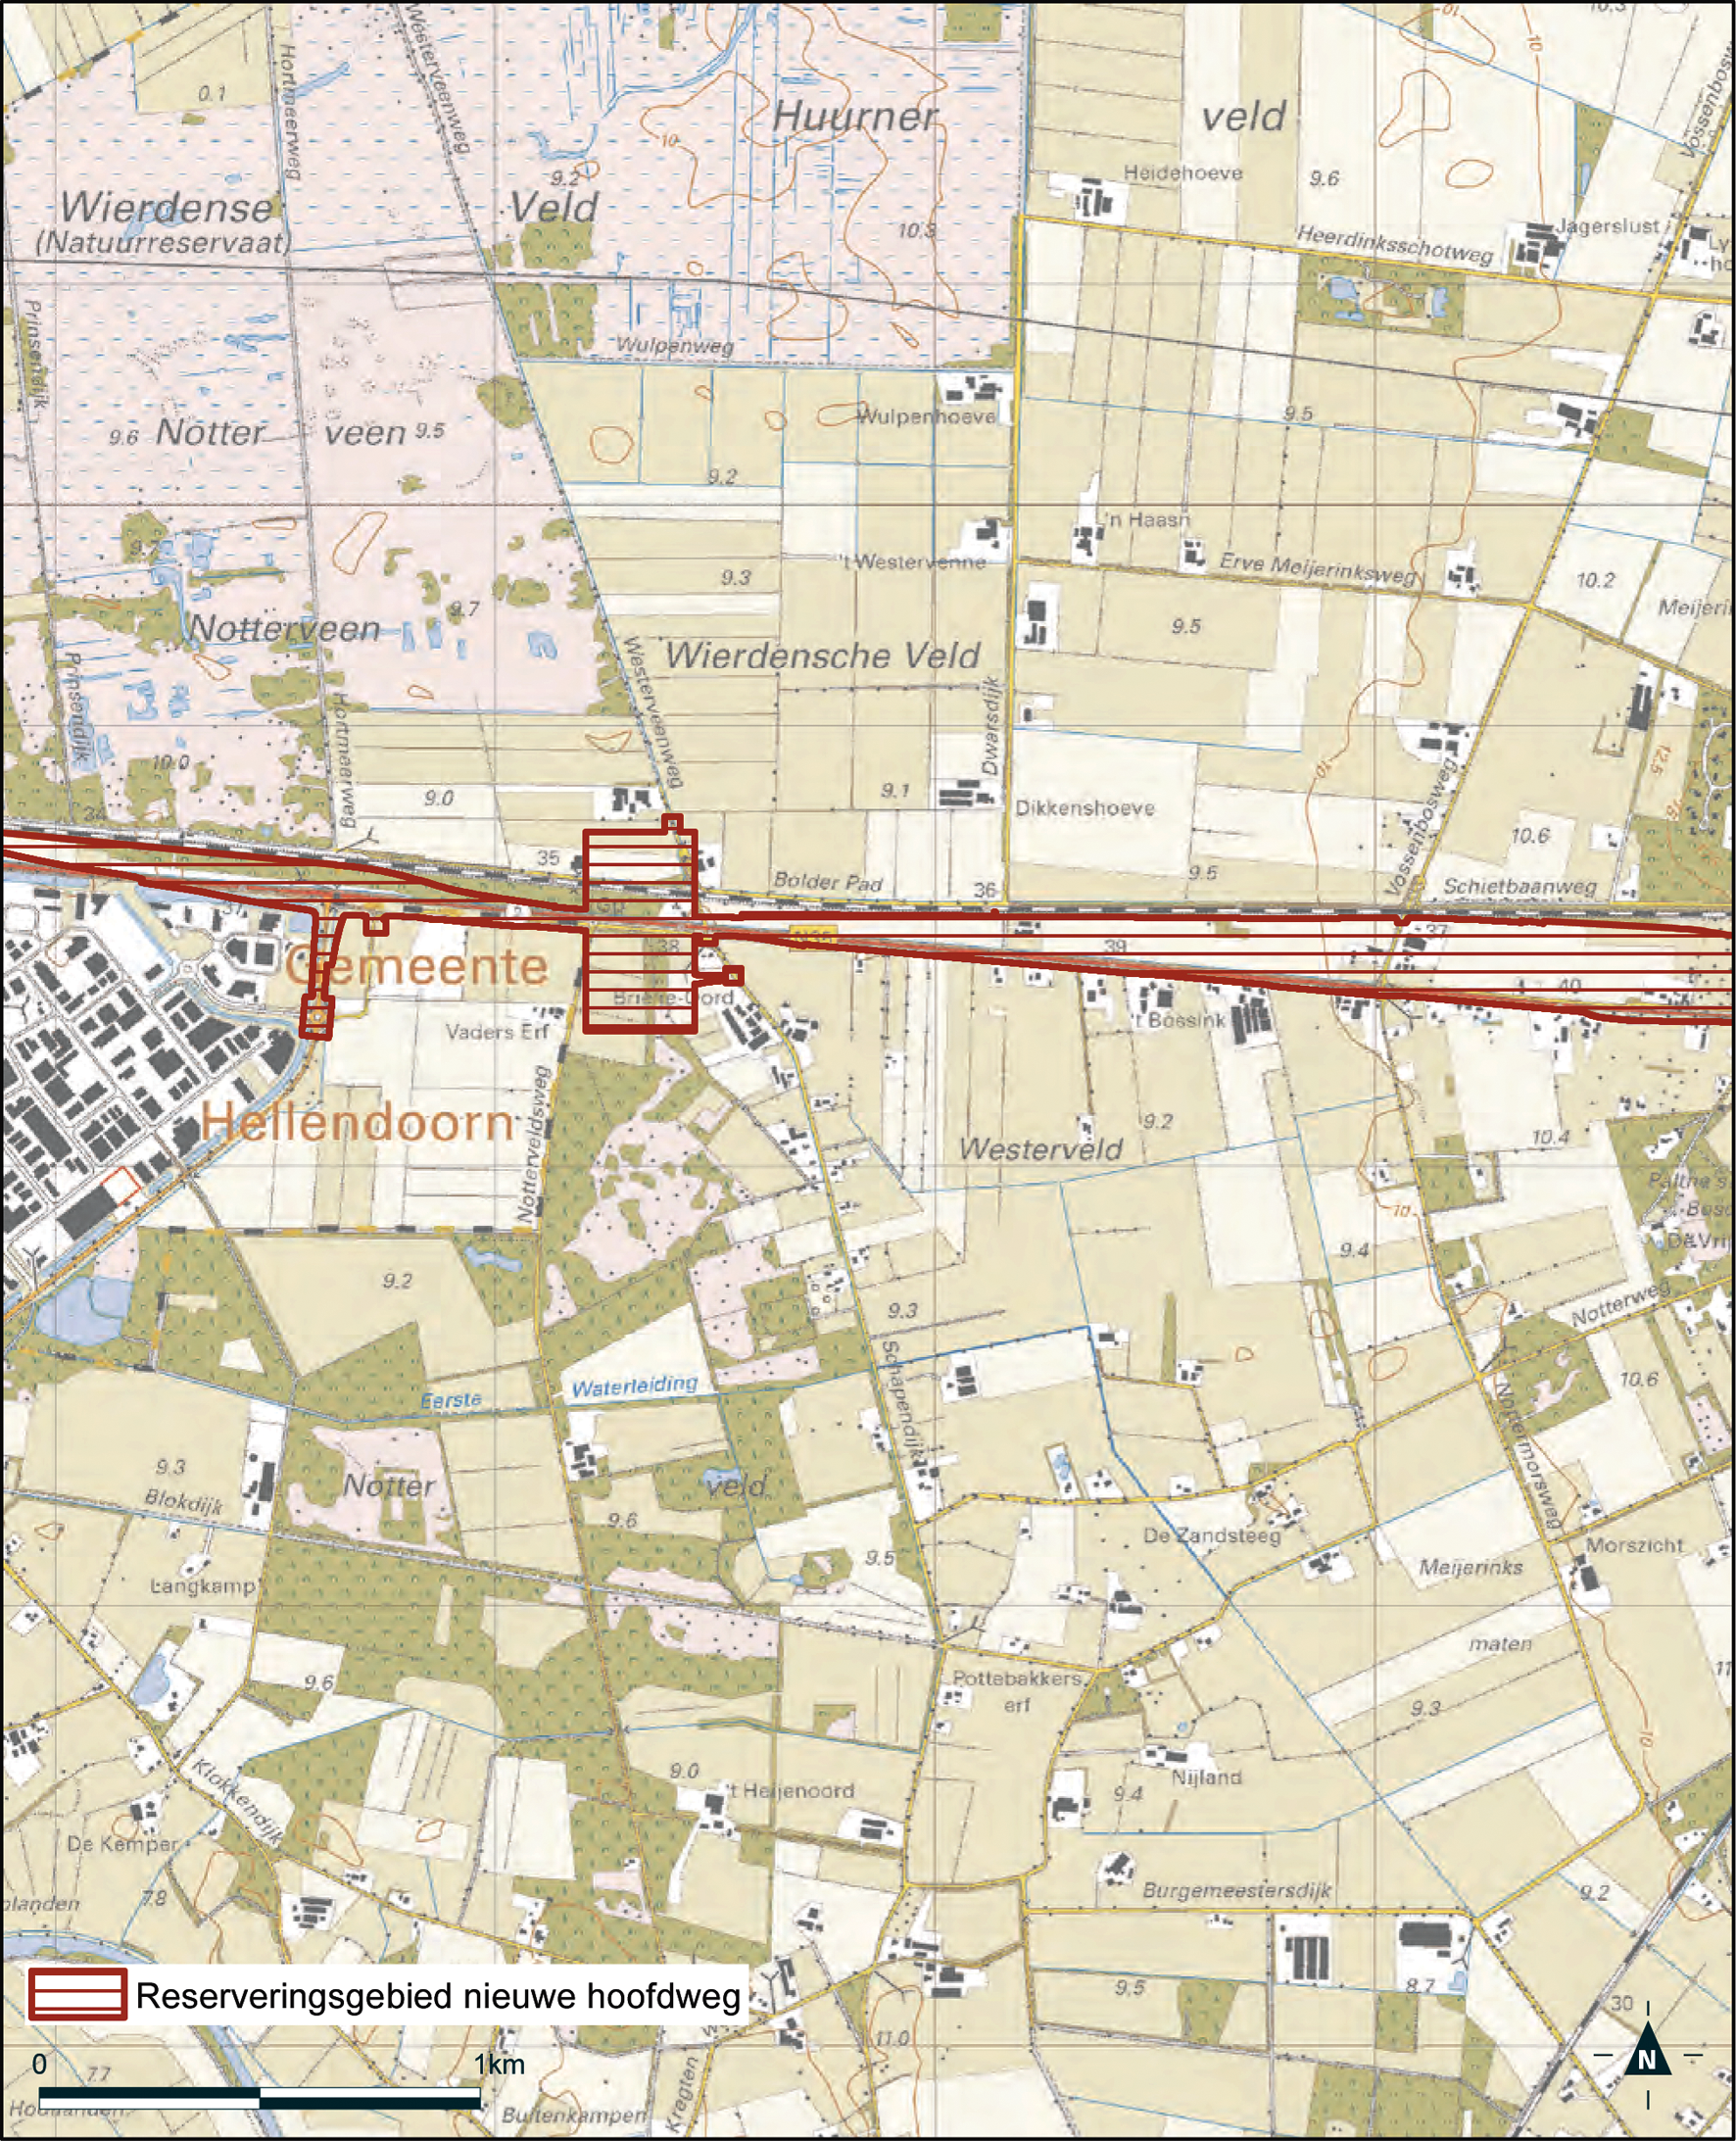 Detailkaart 2 reserveringsgebied nieuwe hoofdweg N35 Nijverdal – Wierden